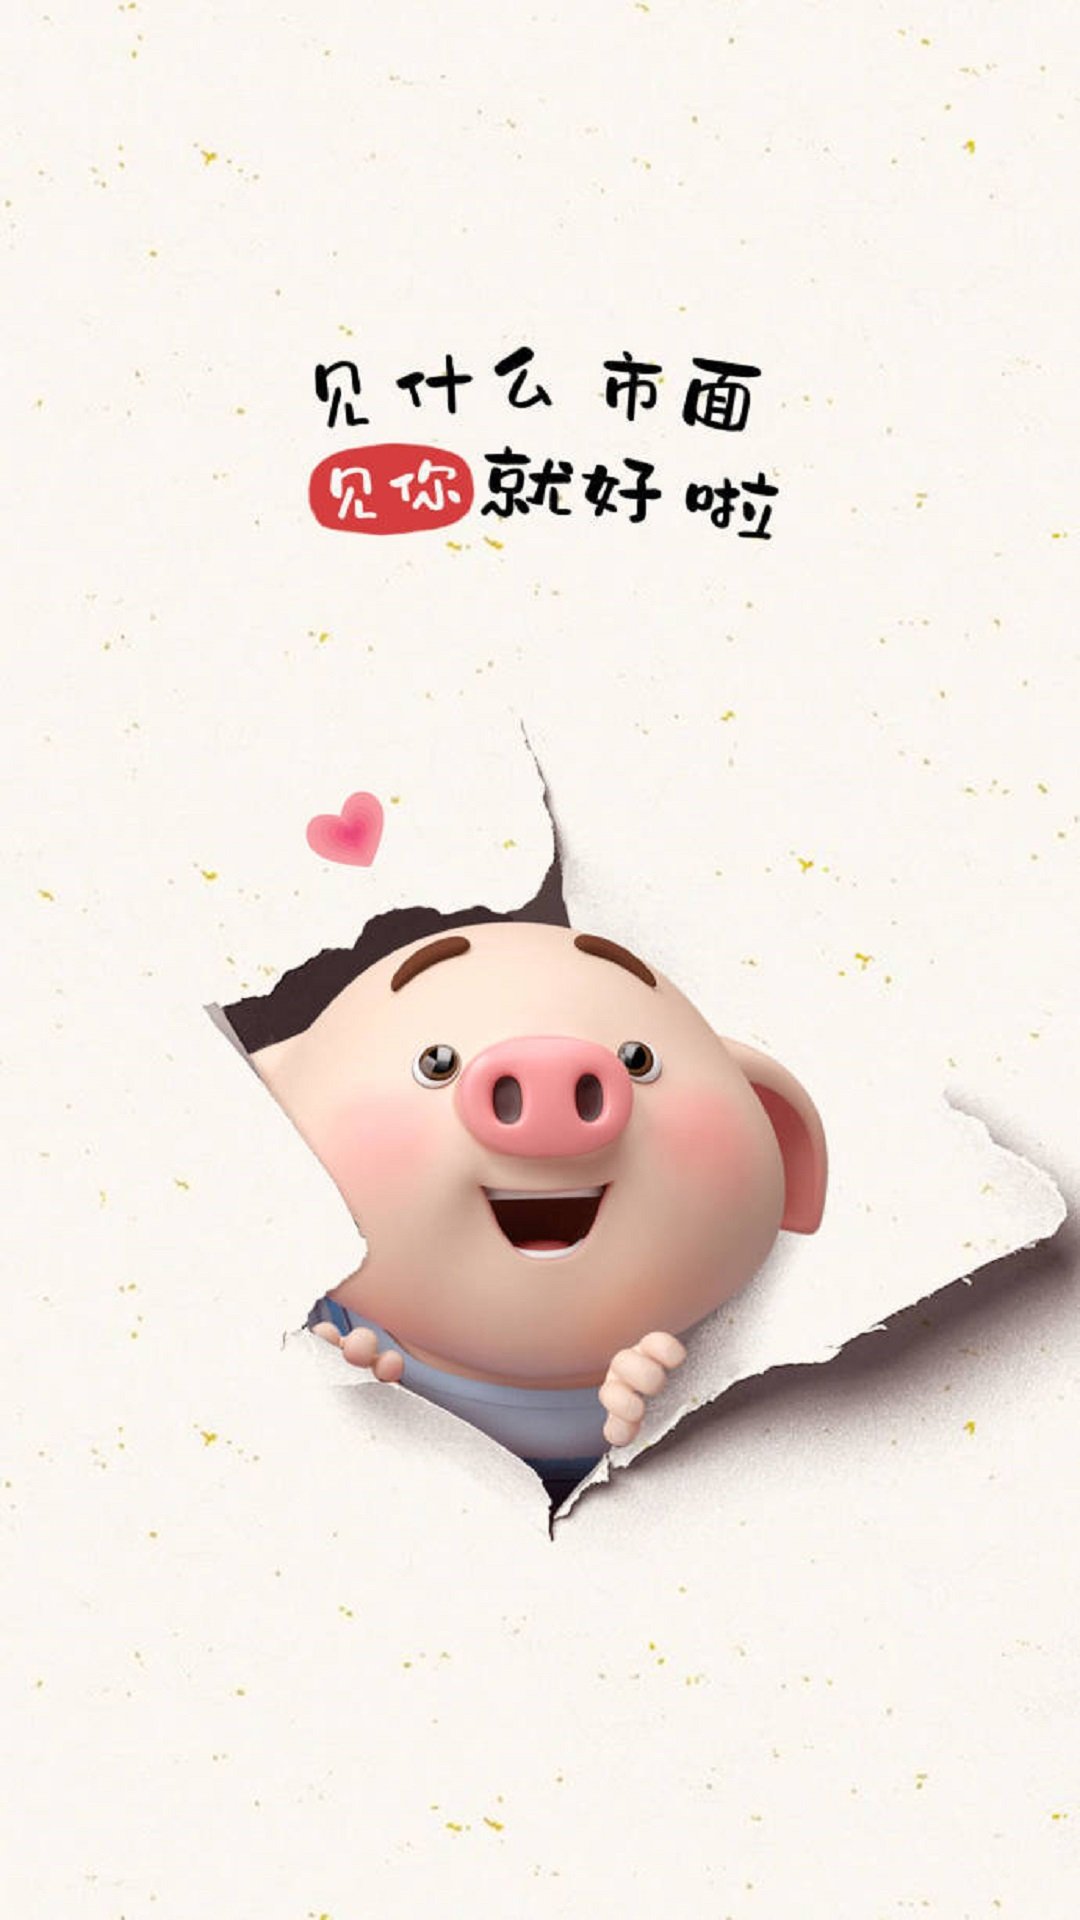 超级可爱的猪猪壁纸 - 堆糖，美图壁纸兴趣社区